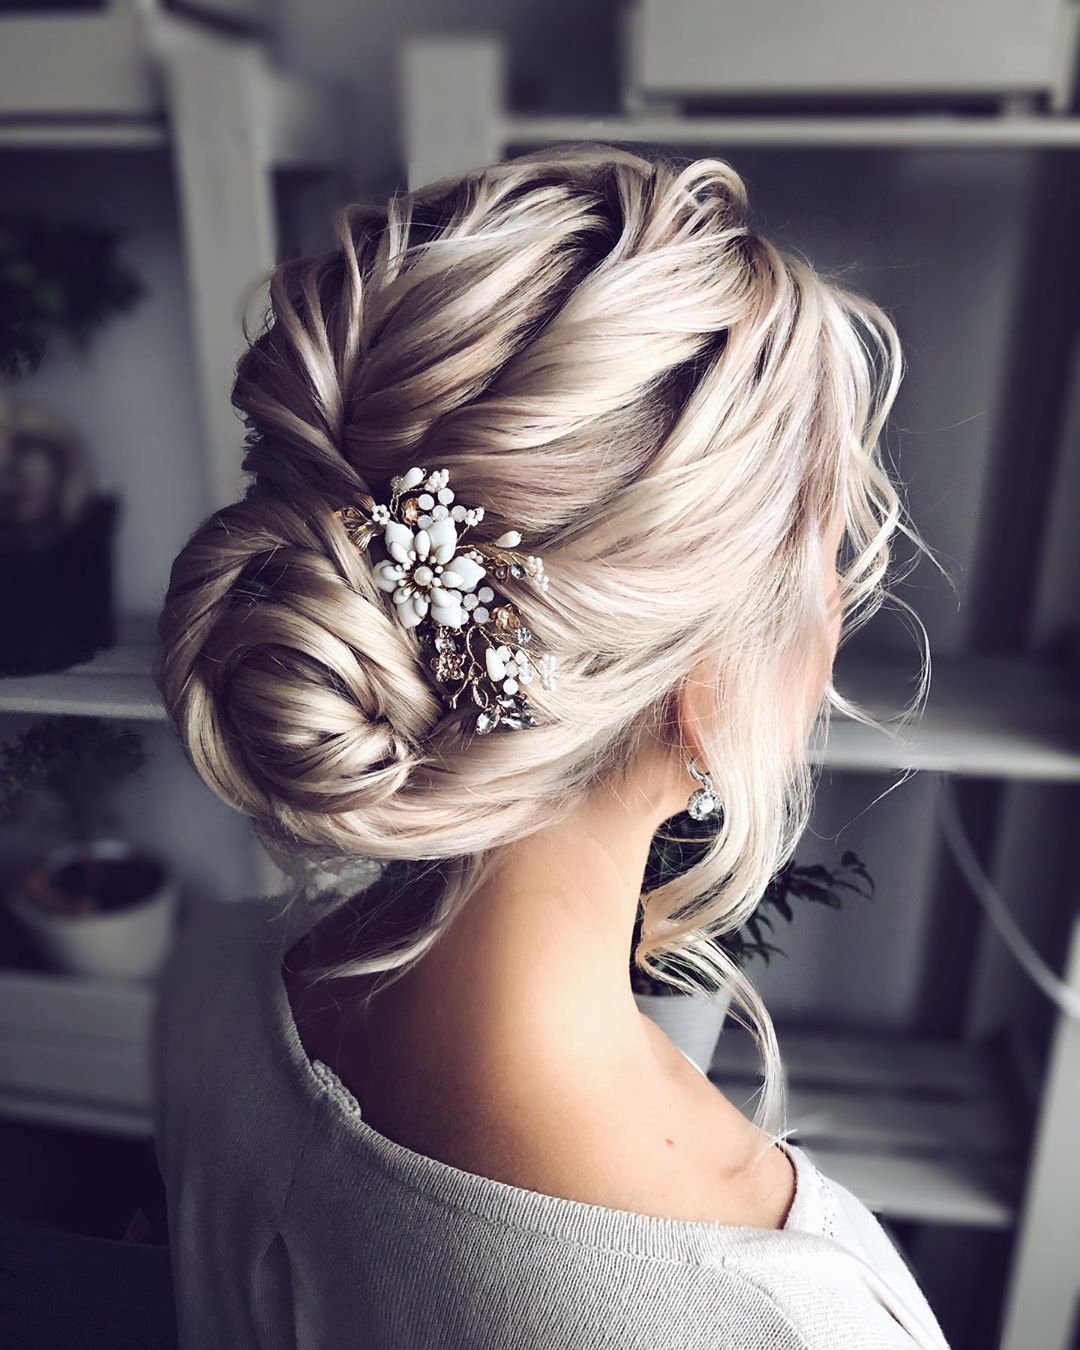 elegant wedding hairstyles textured low bun with pins shiyan_marina